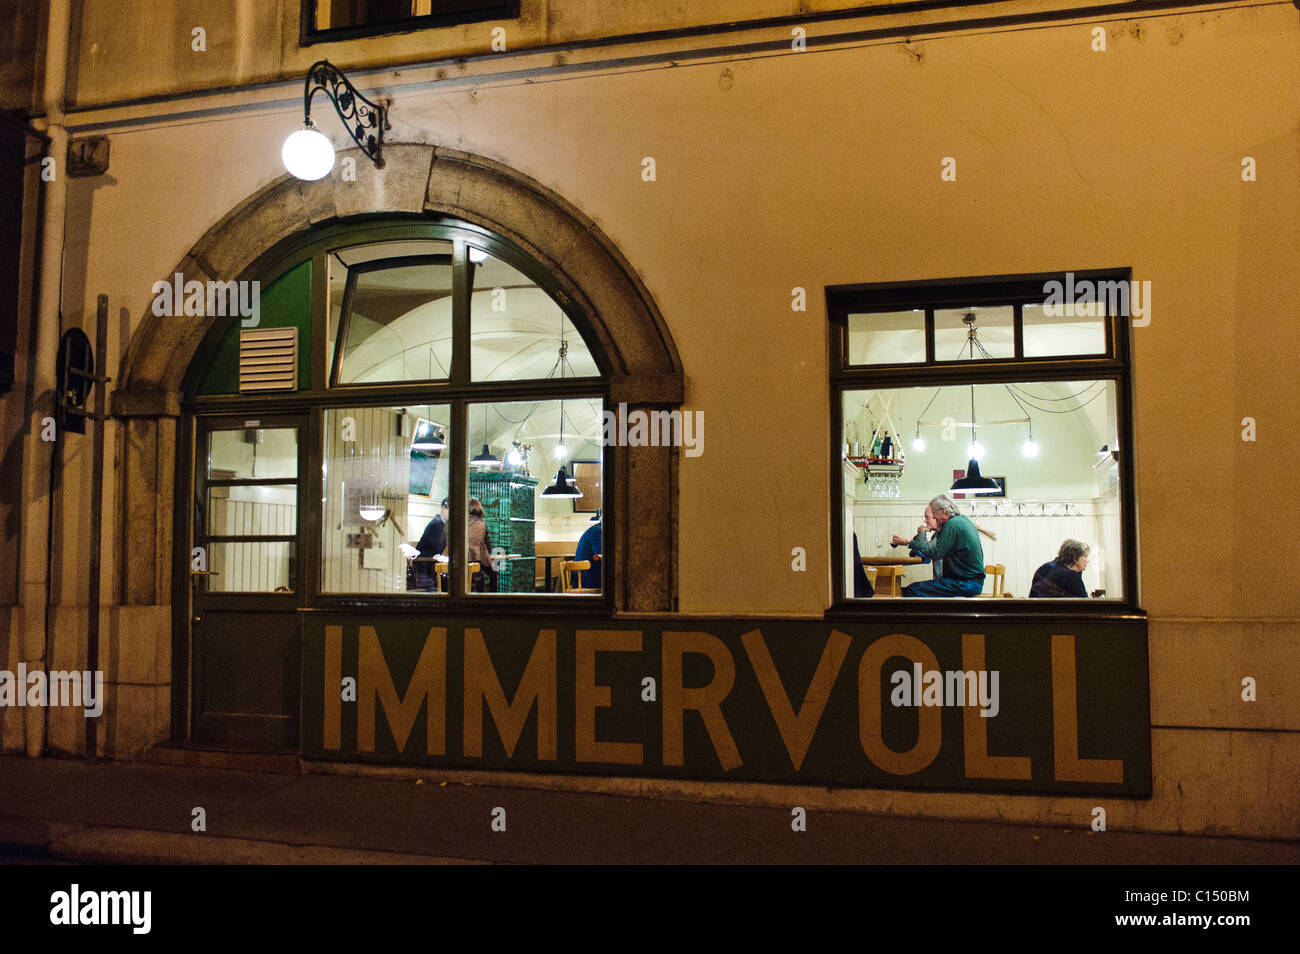 Immervol restaurant, Vienne Autriche Banque D'Images